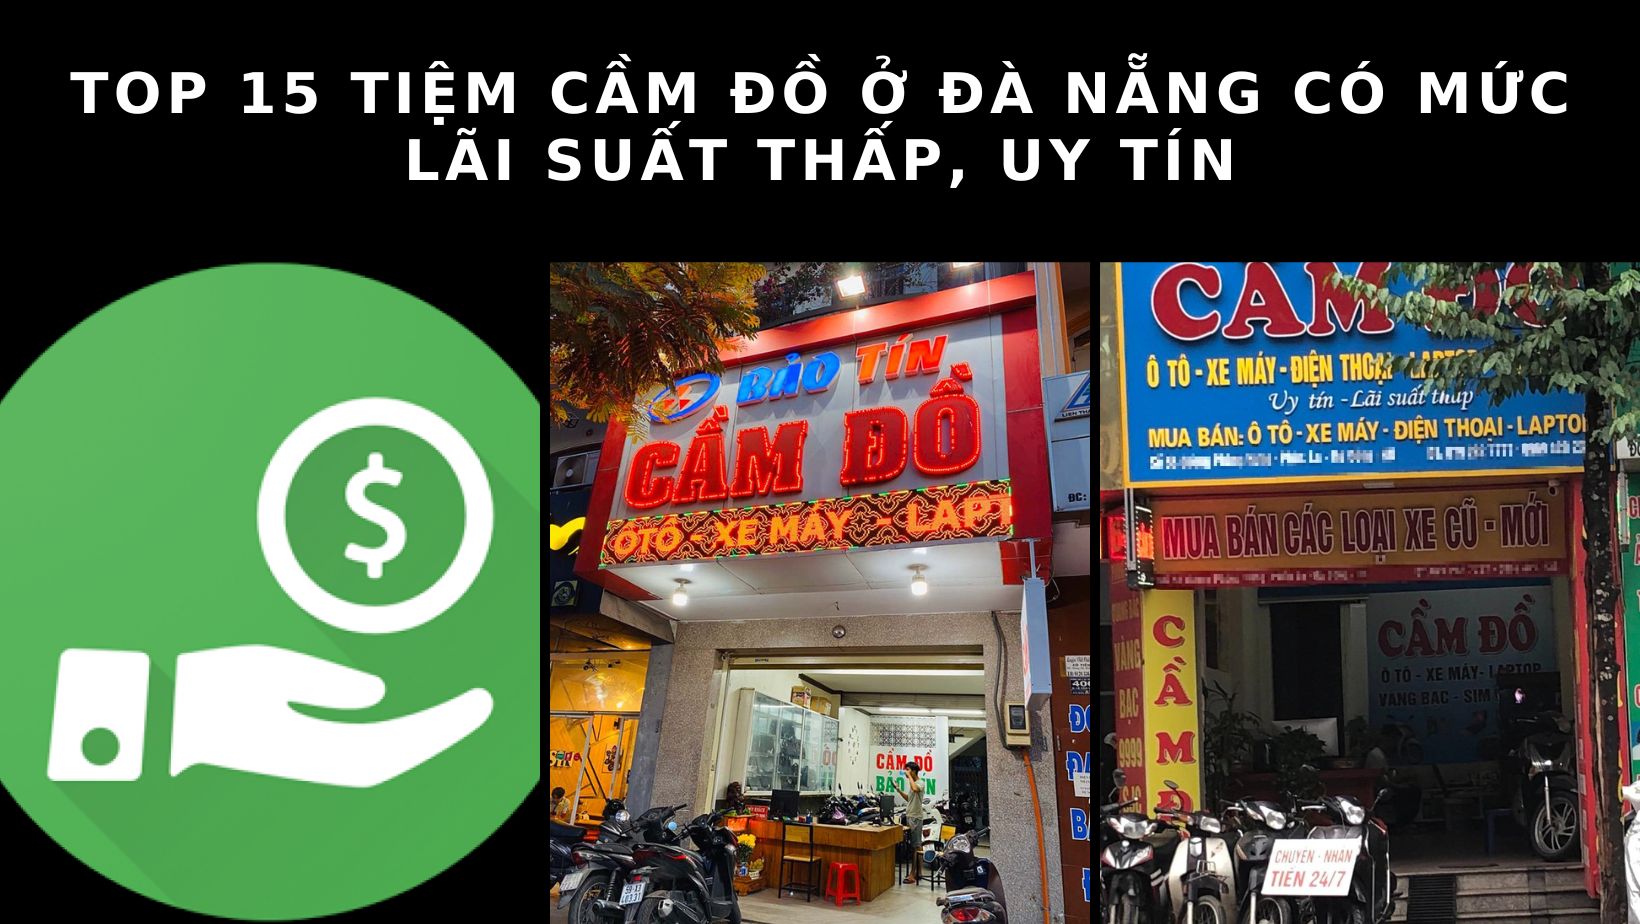 Top 15 tiệm cầm đồ ở Đà Nẵng uy tín, lãi suất thấp